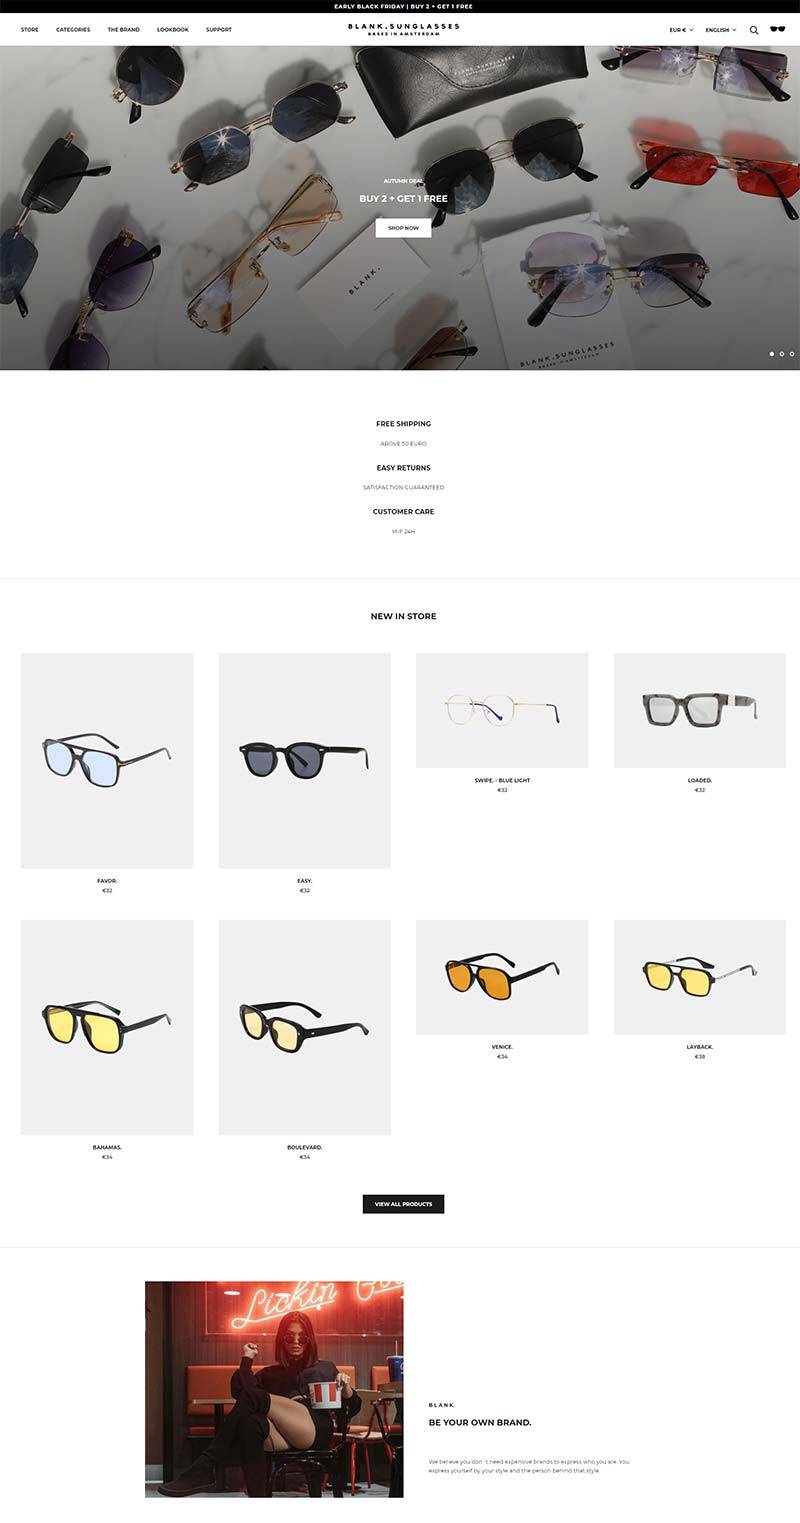 Blank-Sunglasses 荷兰时尚眼镜品牌购物网站